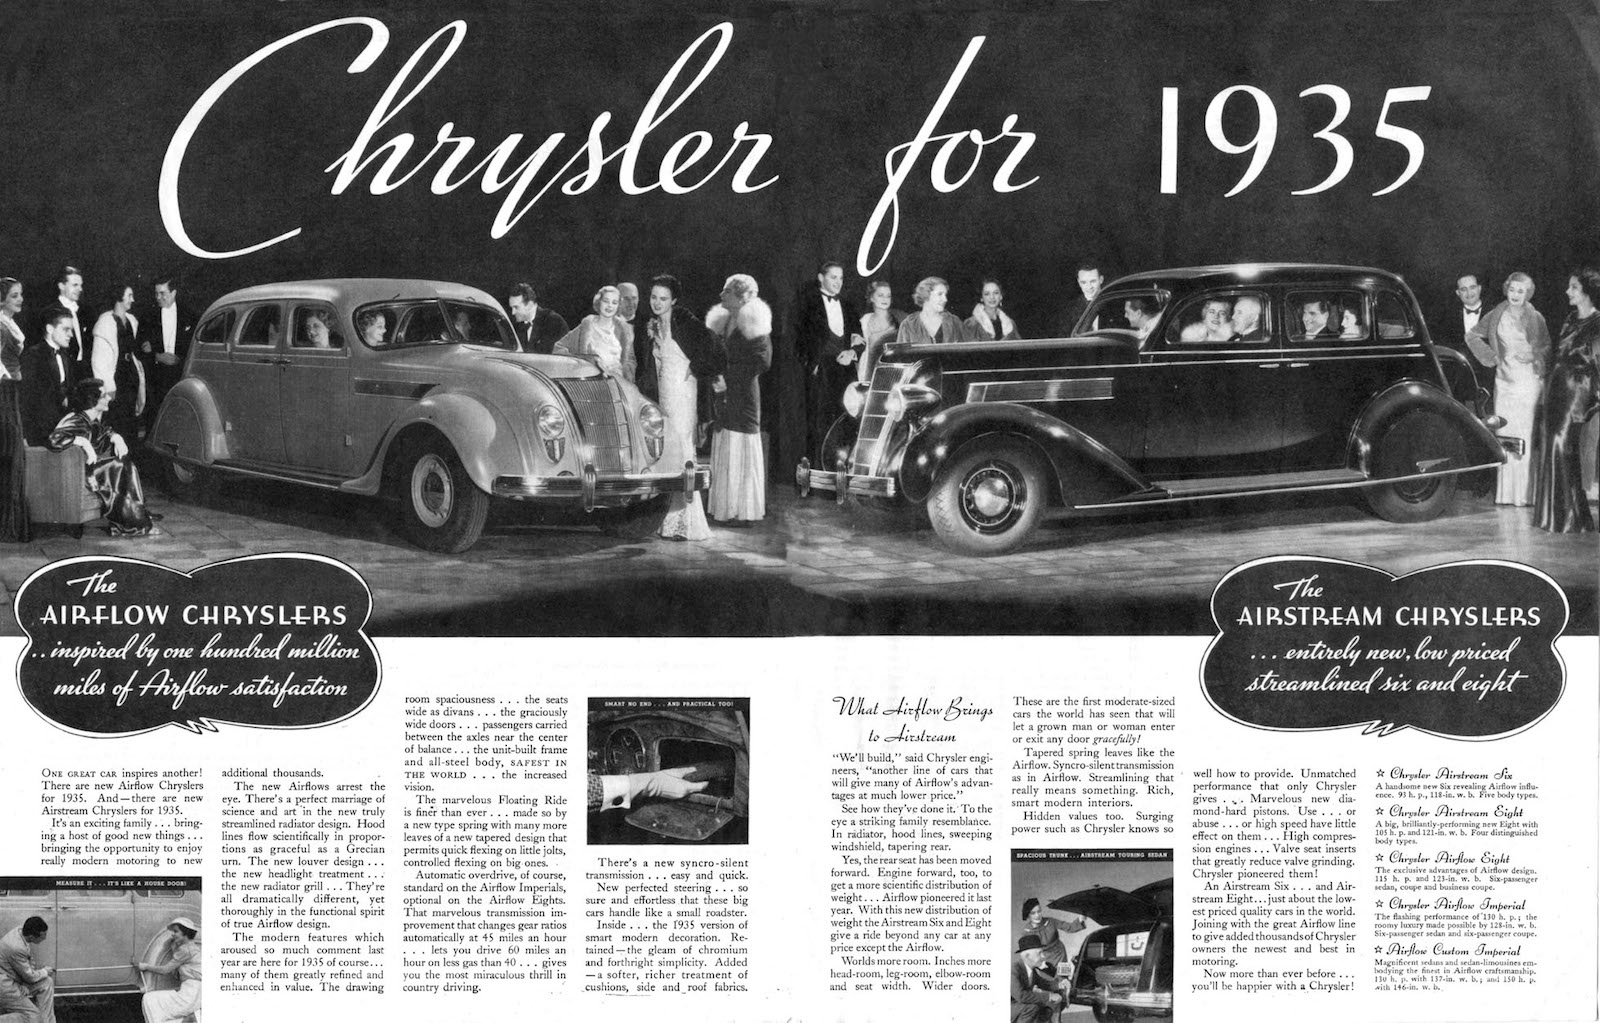 ChryslerFor1935-reg.jpg